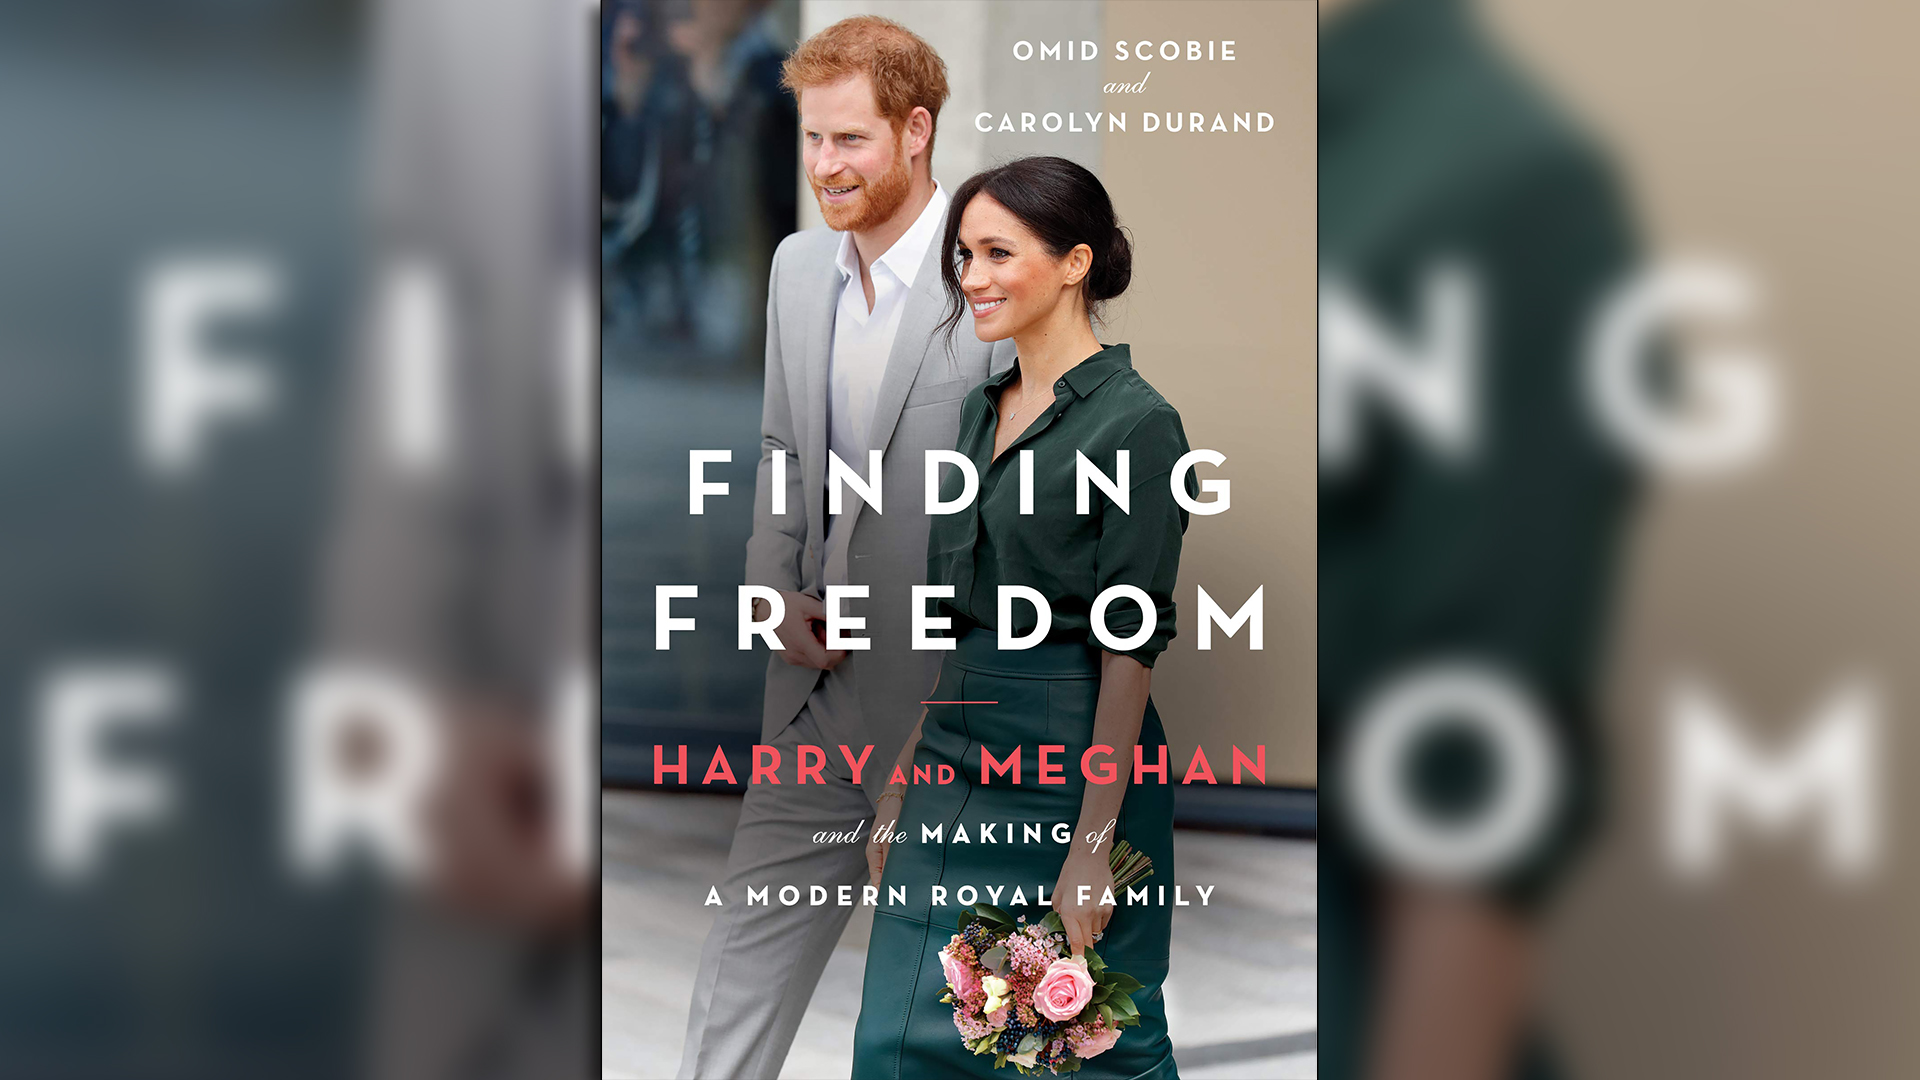 El libro de Omid Scobie y Carolyn Durand, cronistas de la realeza, revela detalles sobre por qué Harry y Meghan tomaron la decisión de renunciar a sus papeles oficiales.